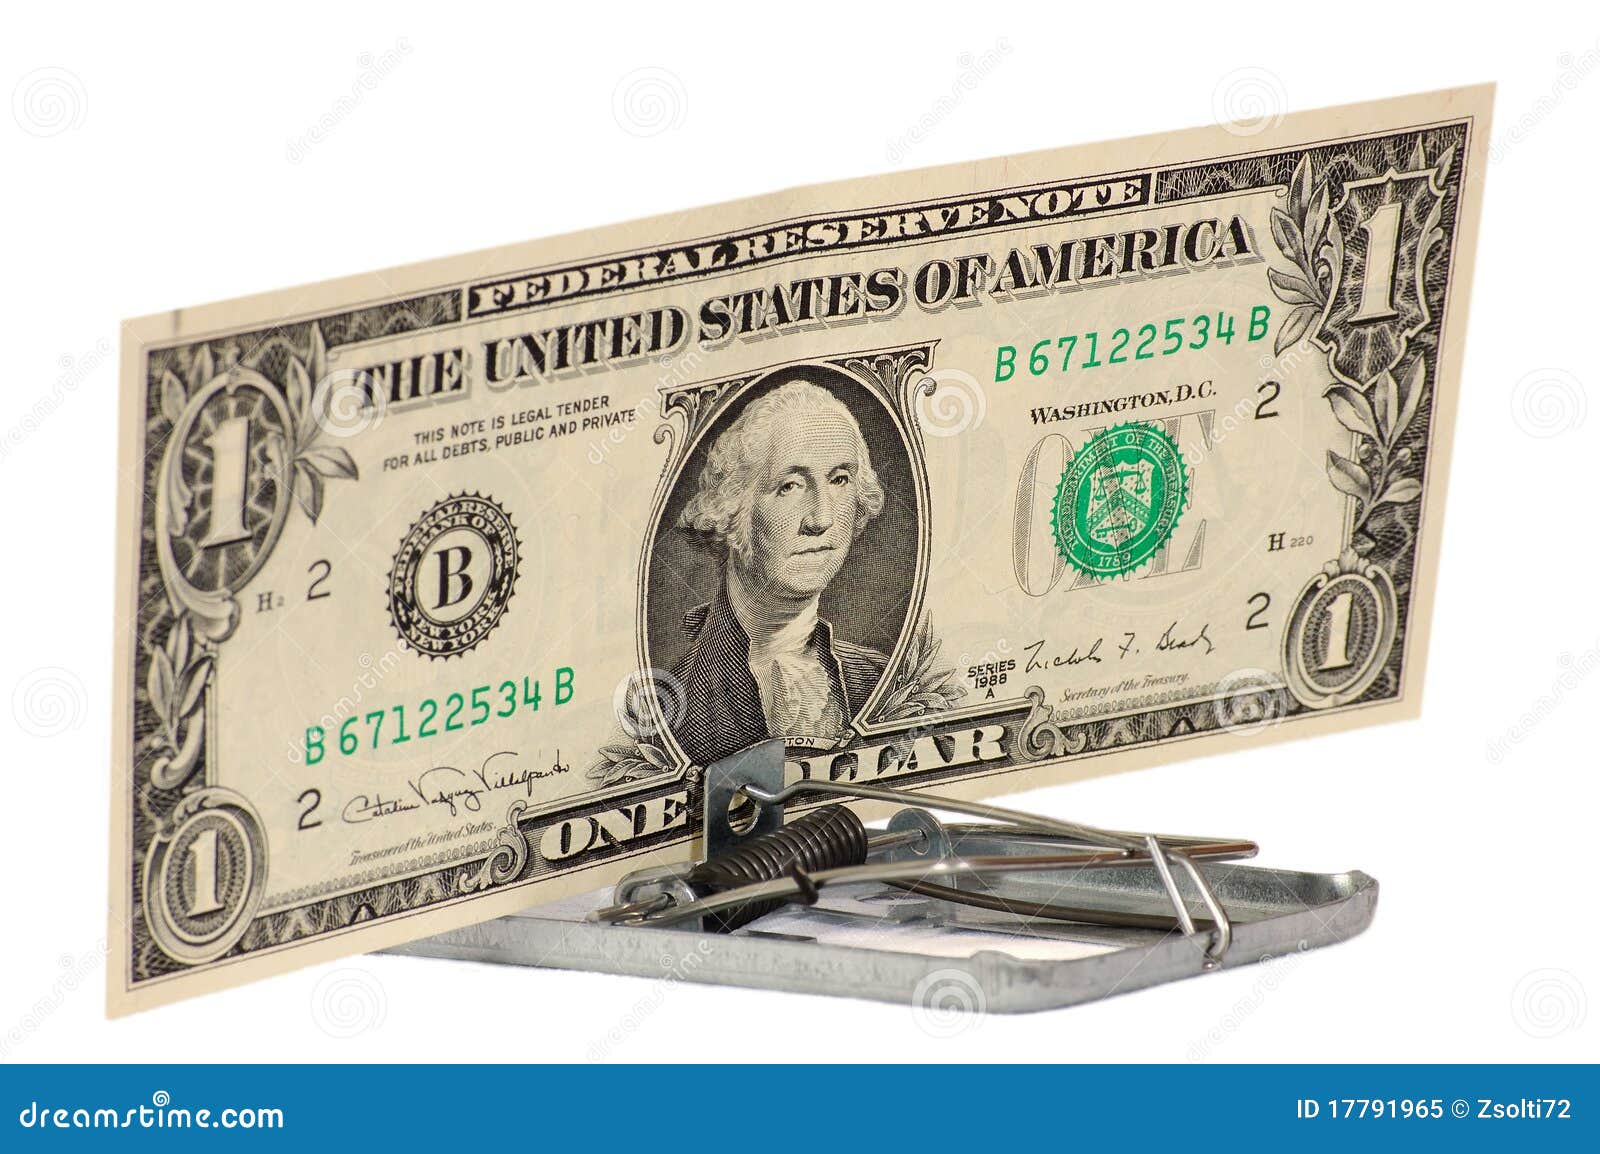 the dollar swindle